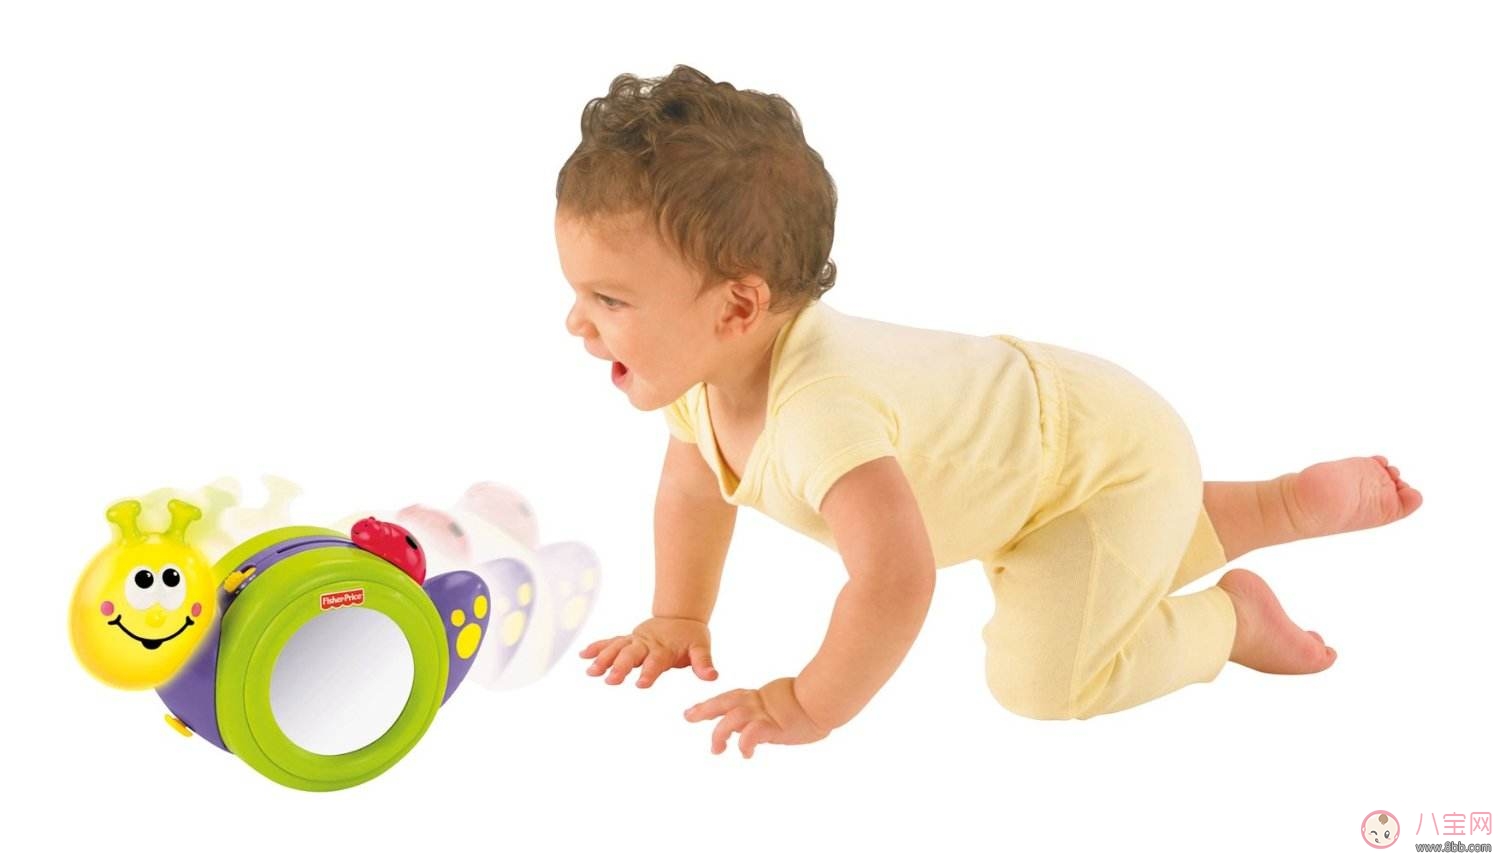 如何帮助婴儿学爬行 怎么教宝宝爬行